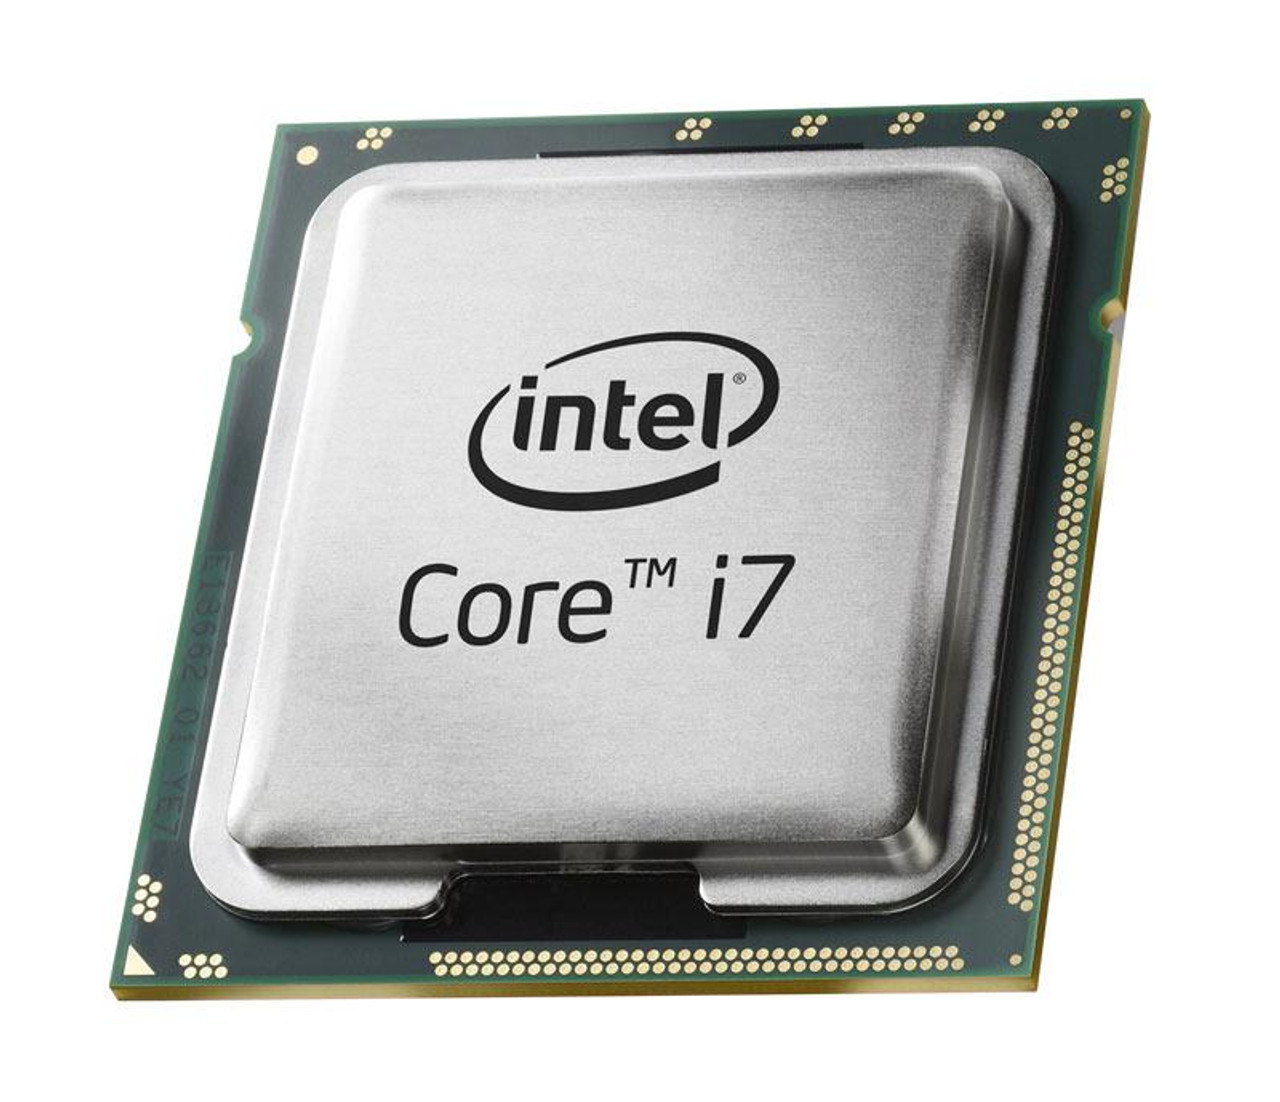 3926A285 Intel Core i7-975 Extreme Edition Quad Core 3.33GHz 6.40GT/s QPI 8MB L3 Cache Socket LGA1366 Desktop Processor